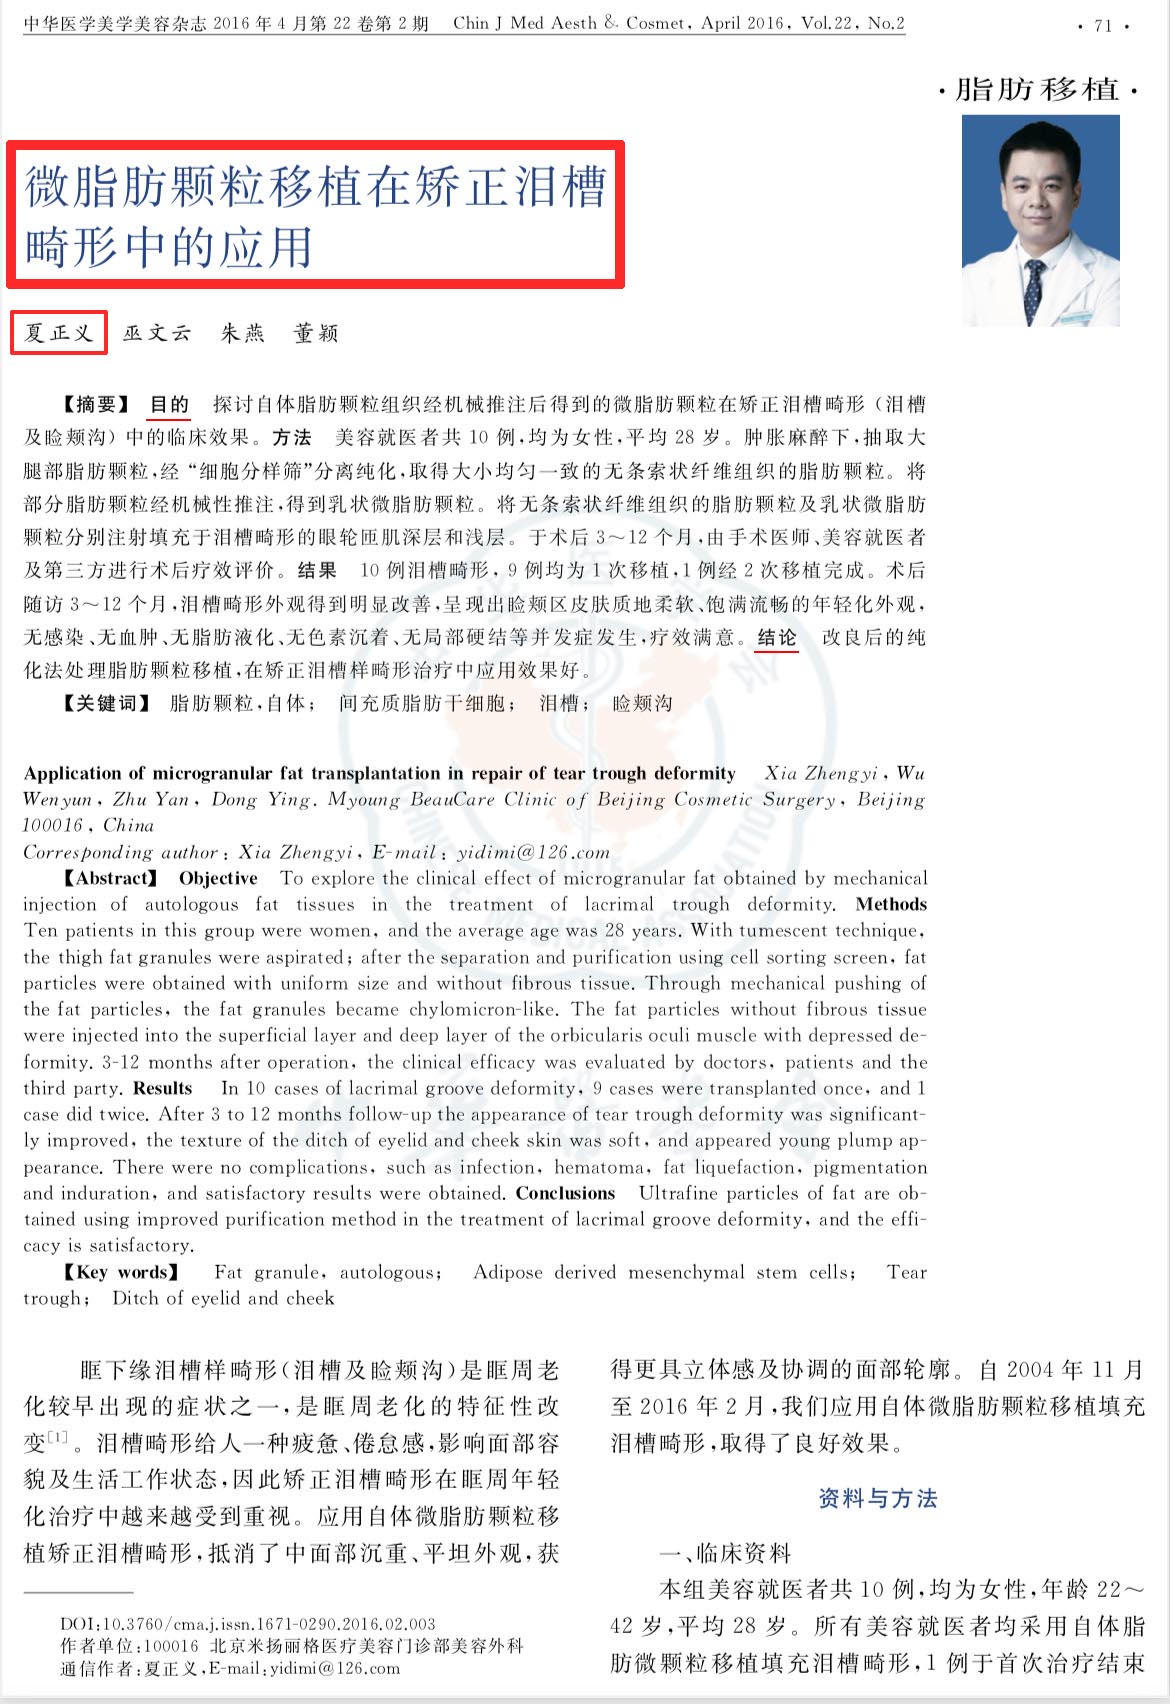 北京米扬丽格夏正义主任多篇学术论文收录在《中华医学美学美容杂志》